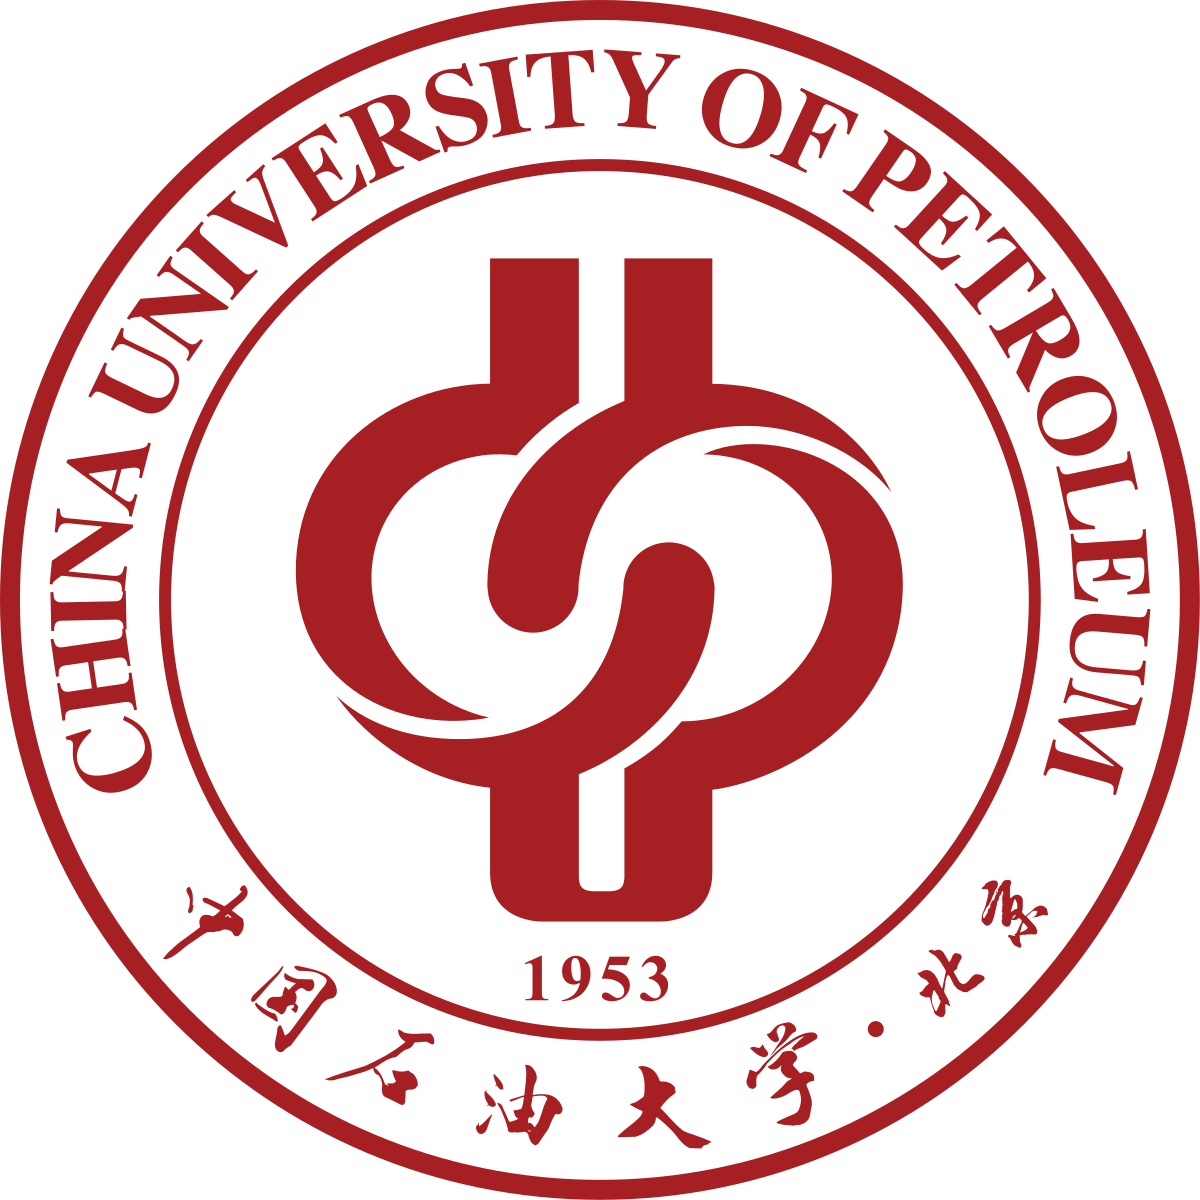 China University of Petroleum (Beijing) logo